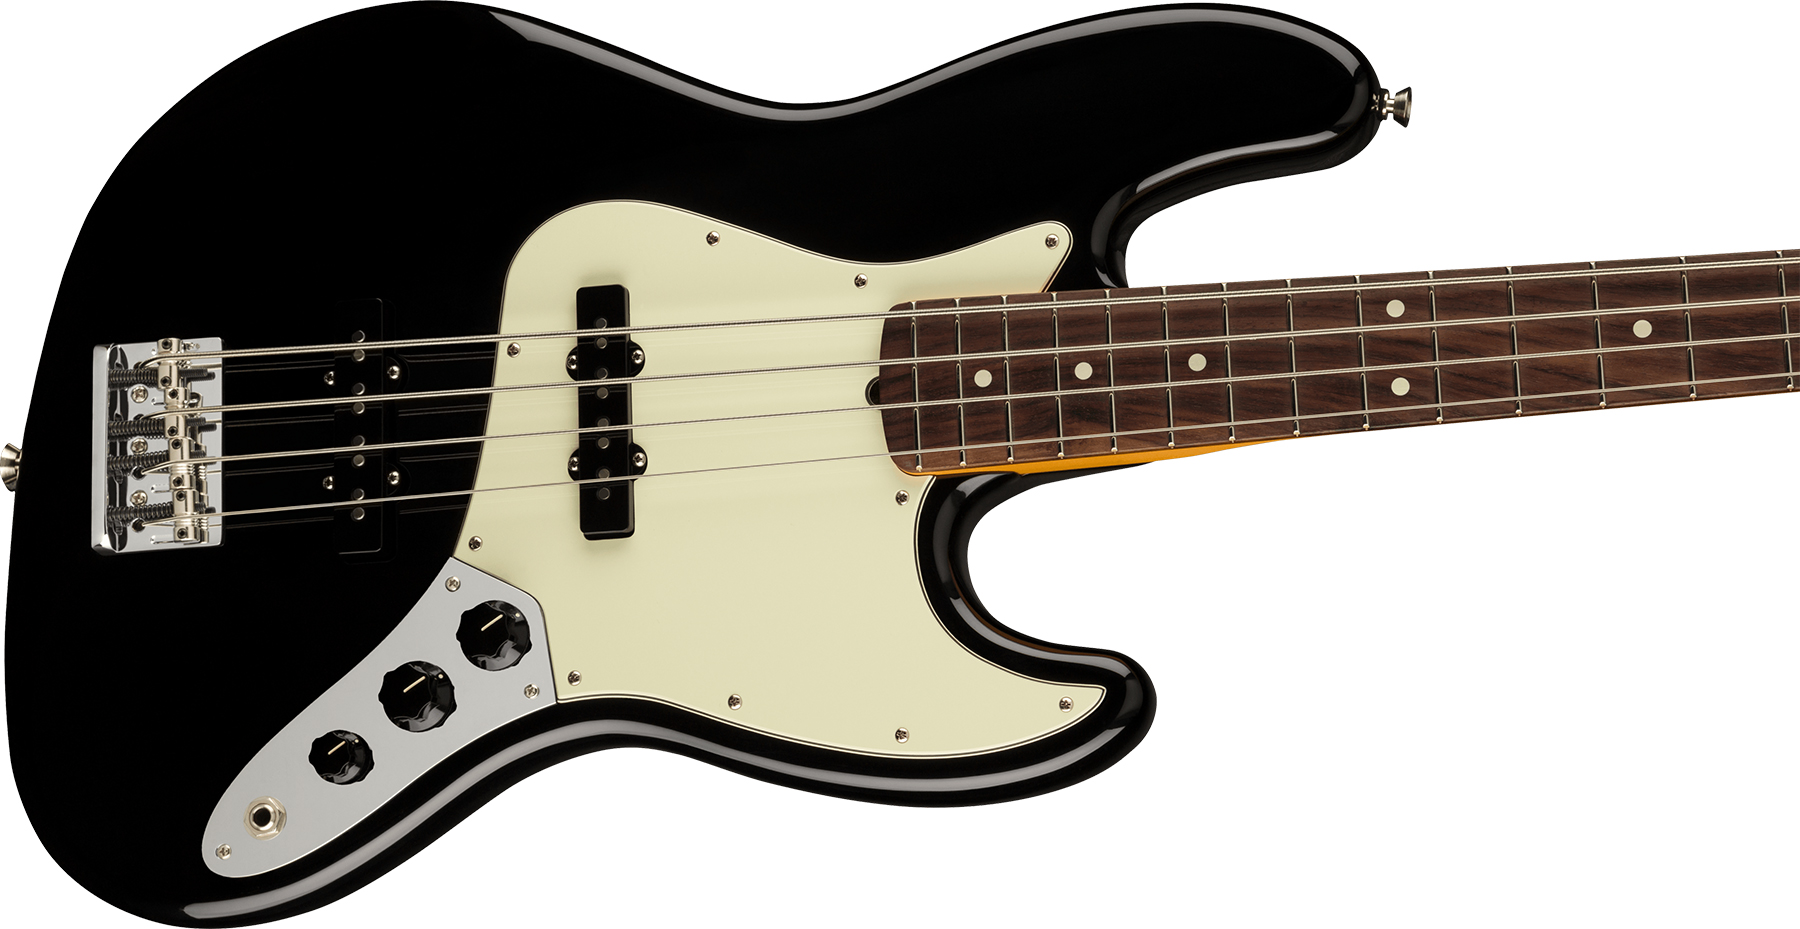 Fender Jazz Bass American Professional Ii Usa Rw - Black - Bajo eléctrico de cuerpo sólido - Variation 2